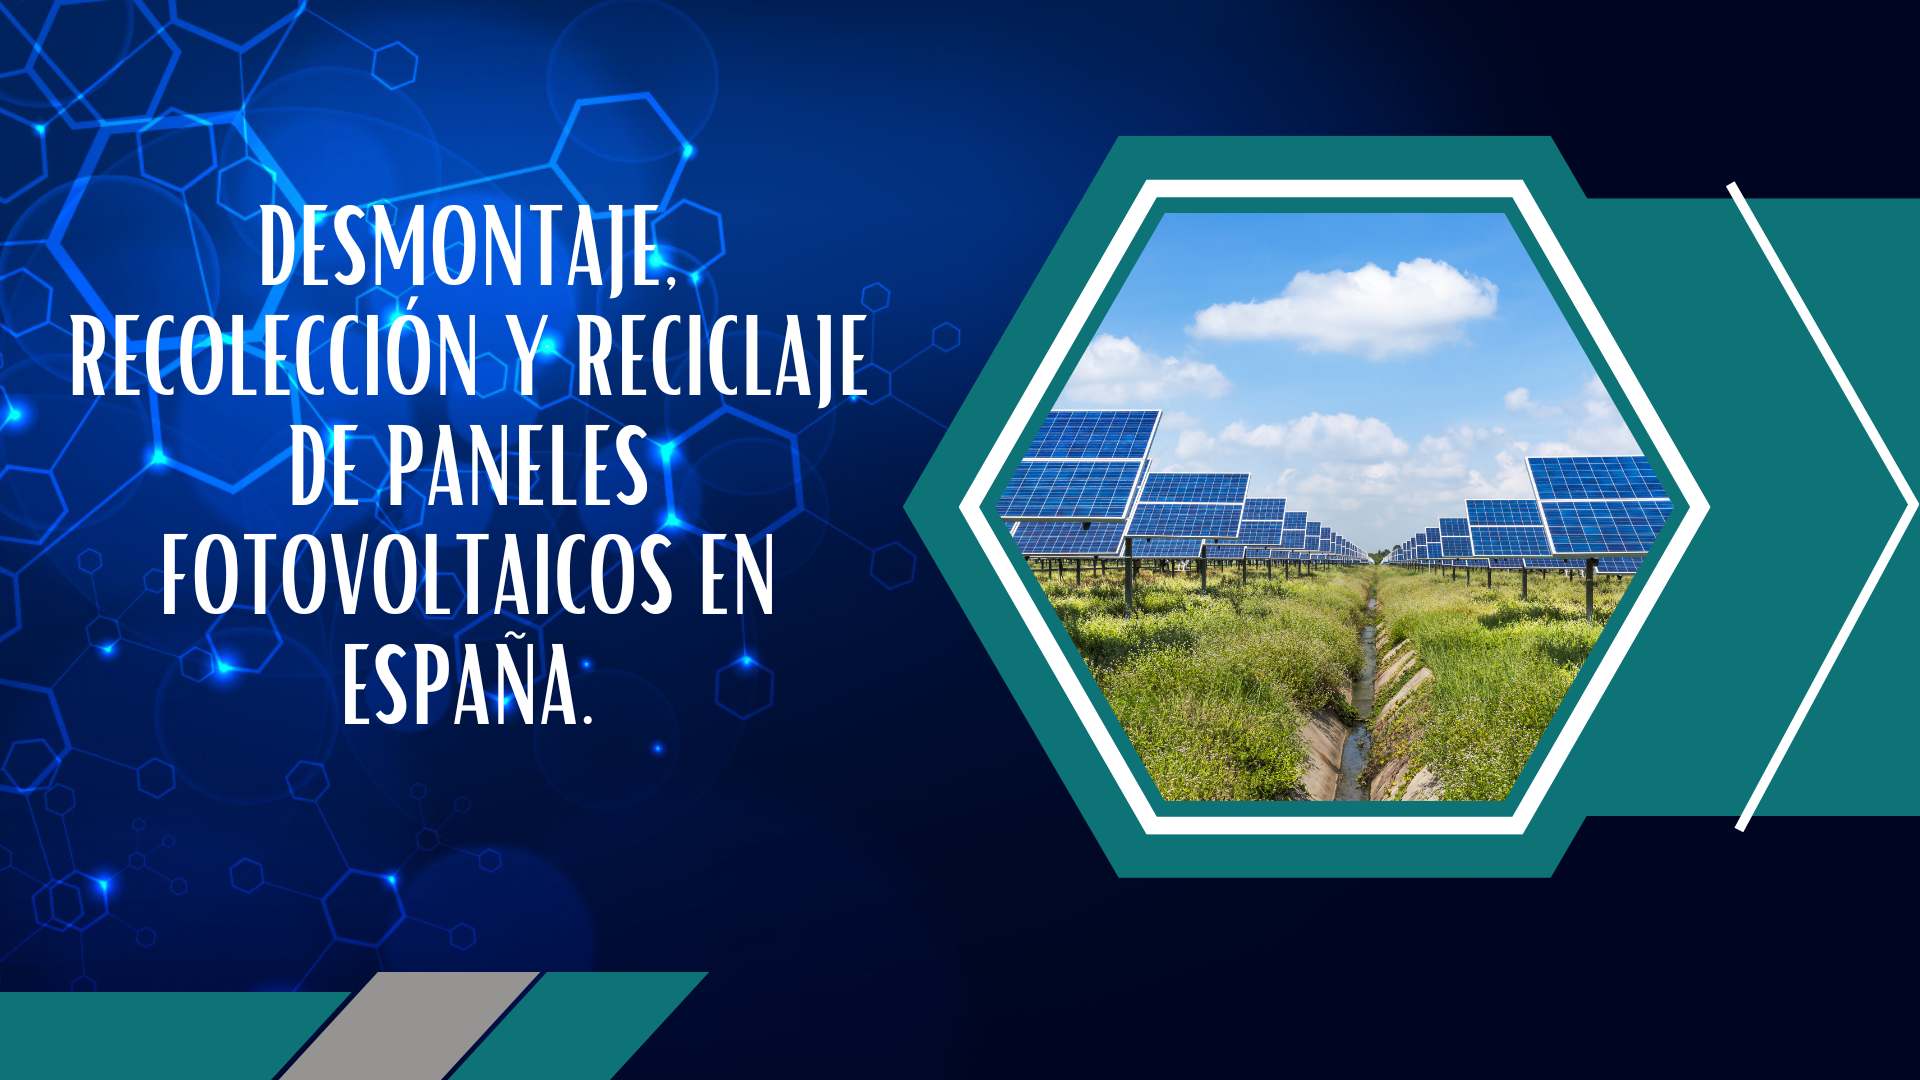 Desmontaje, recolección y reciclaje de paneles fotovoltaicos en España.